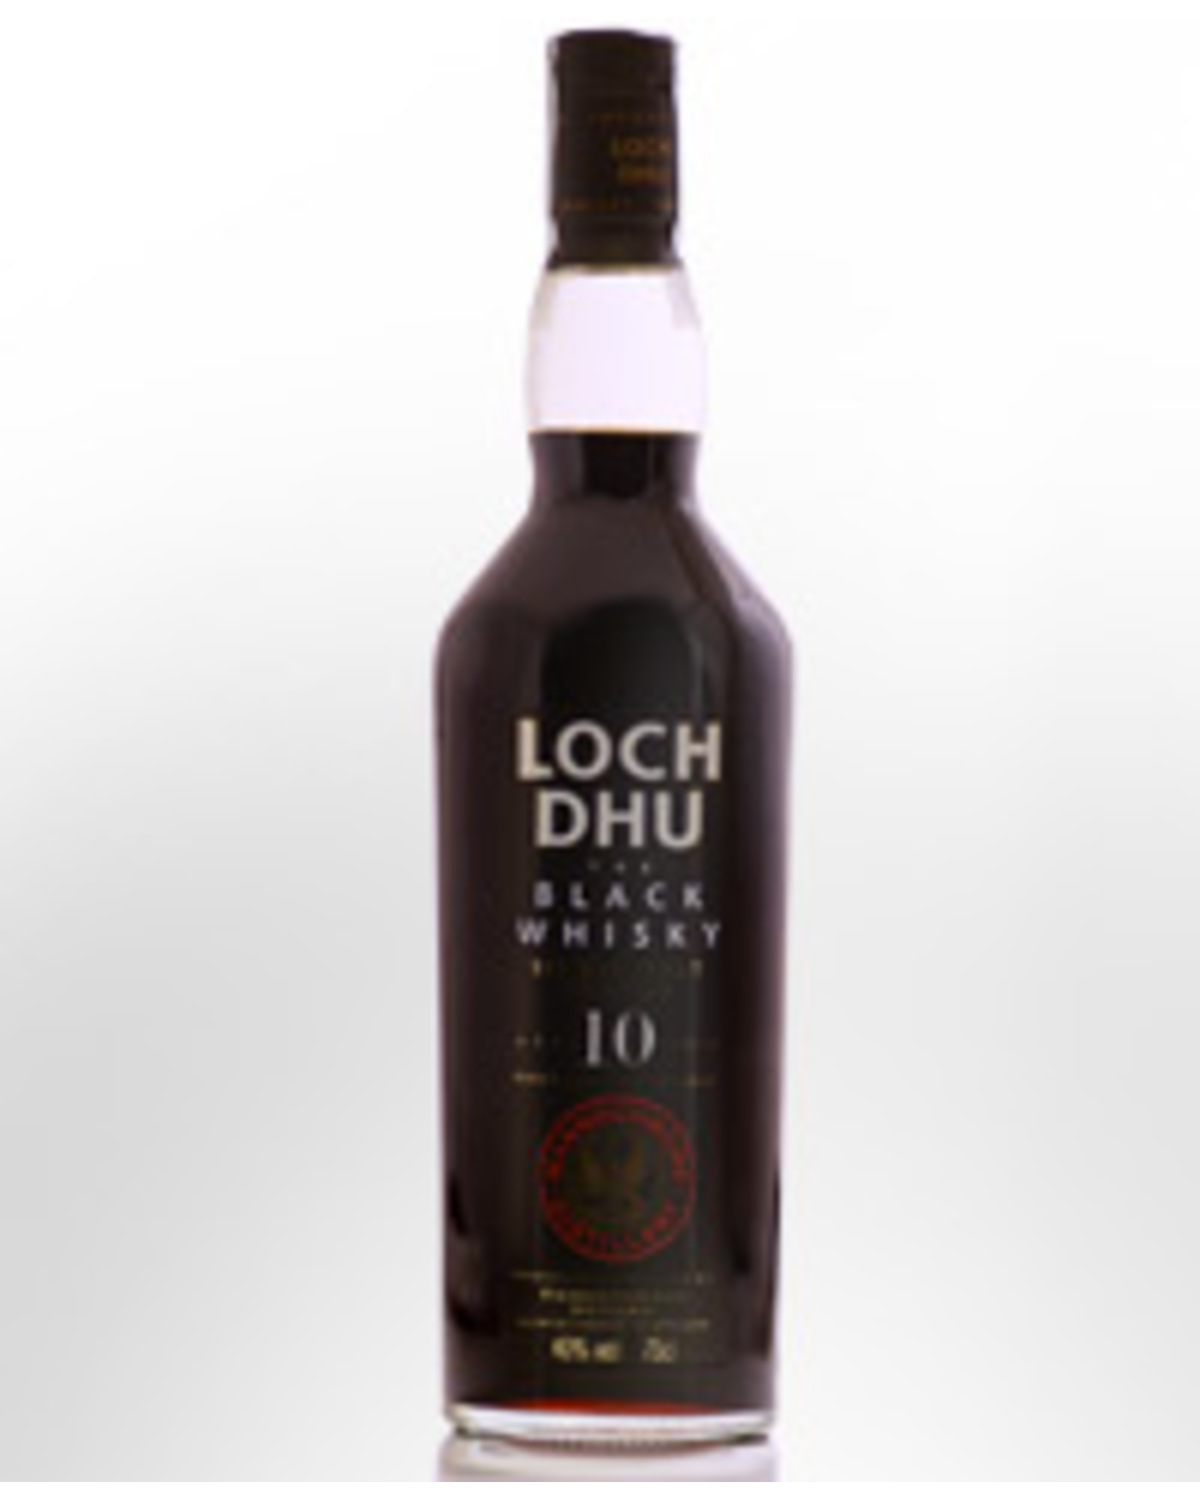 Mannochmore Loch Dhu The Black Whisky 10 Year Old Single Malt Scotch ...